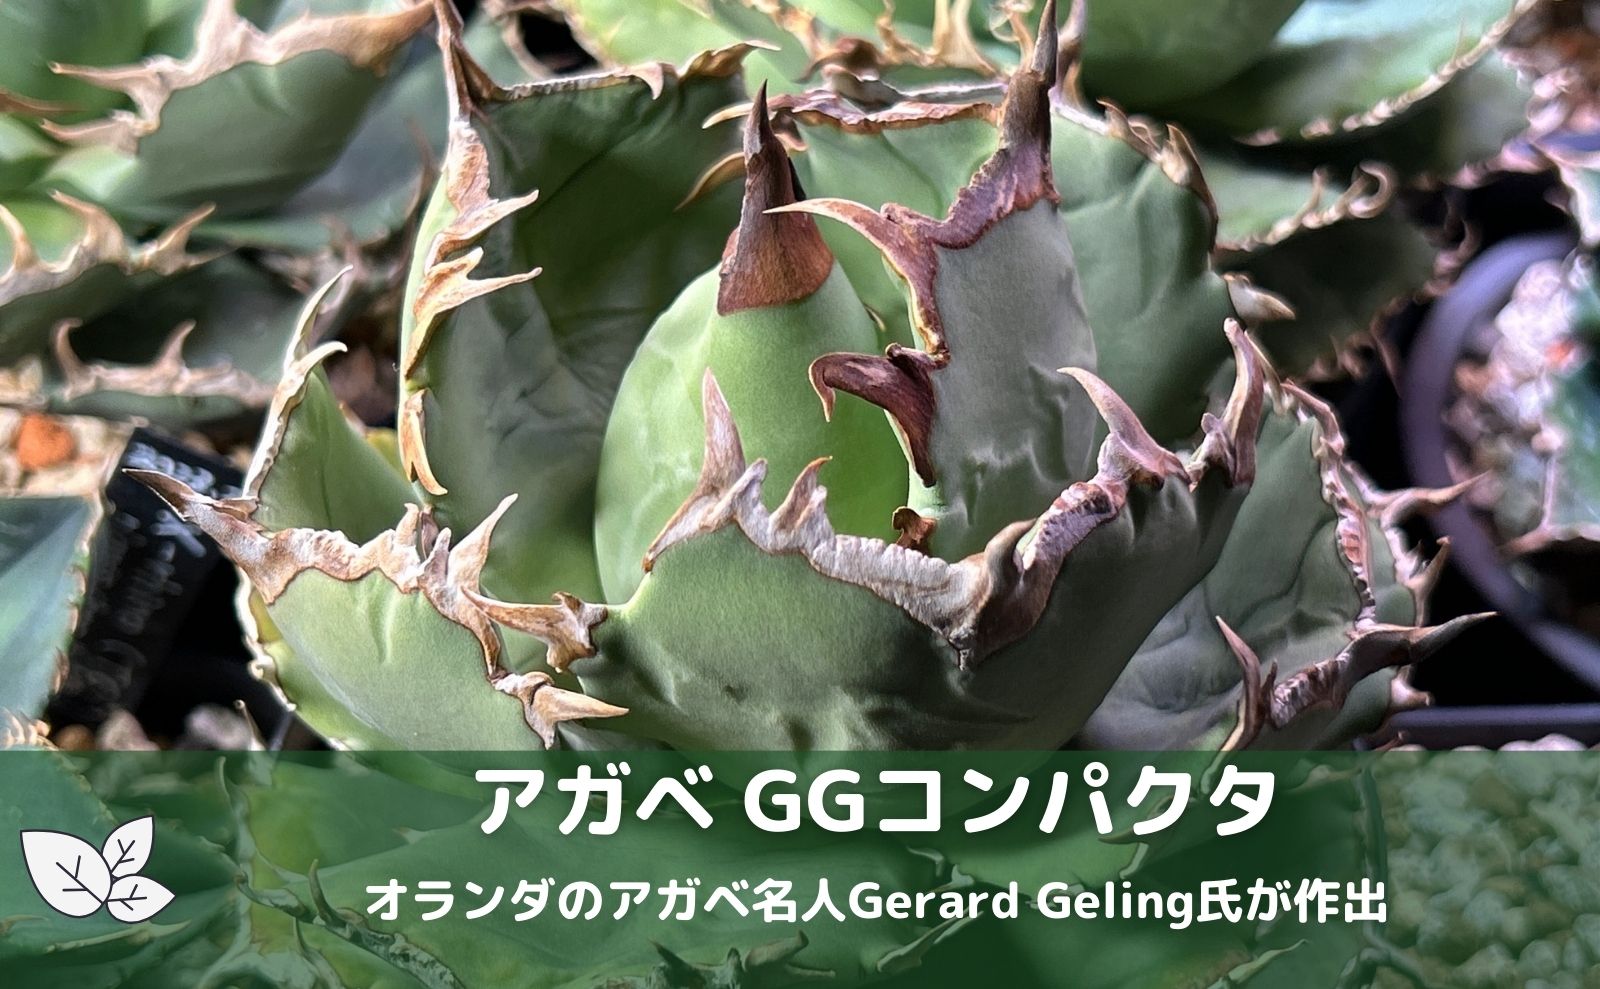 アガベ agave チタノタ GGコンパクタ - インテリア小物